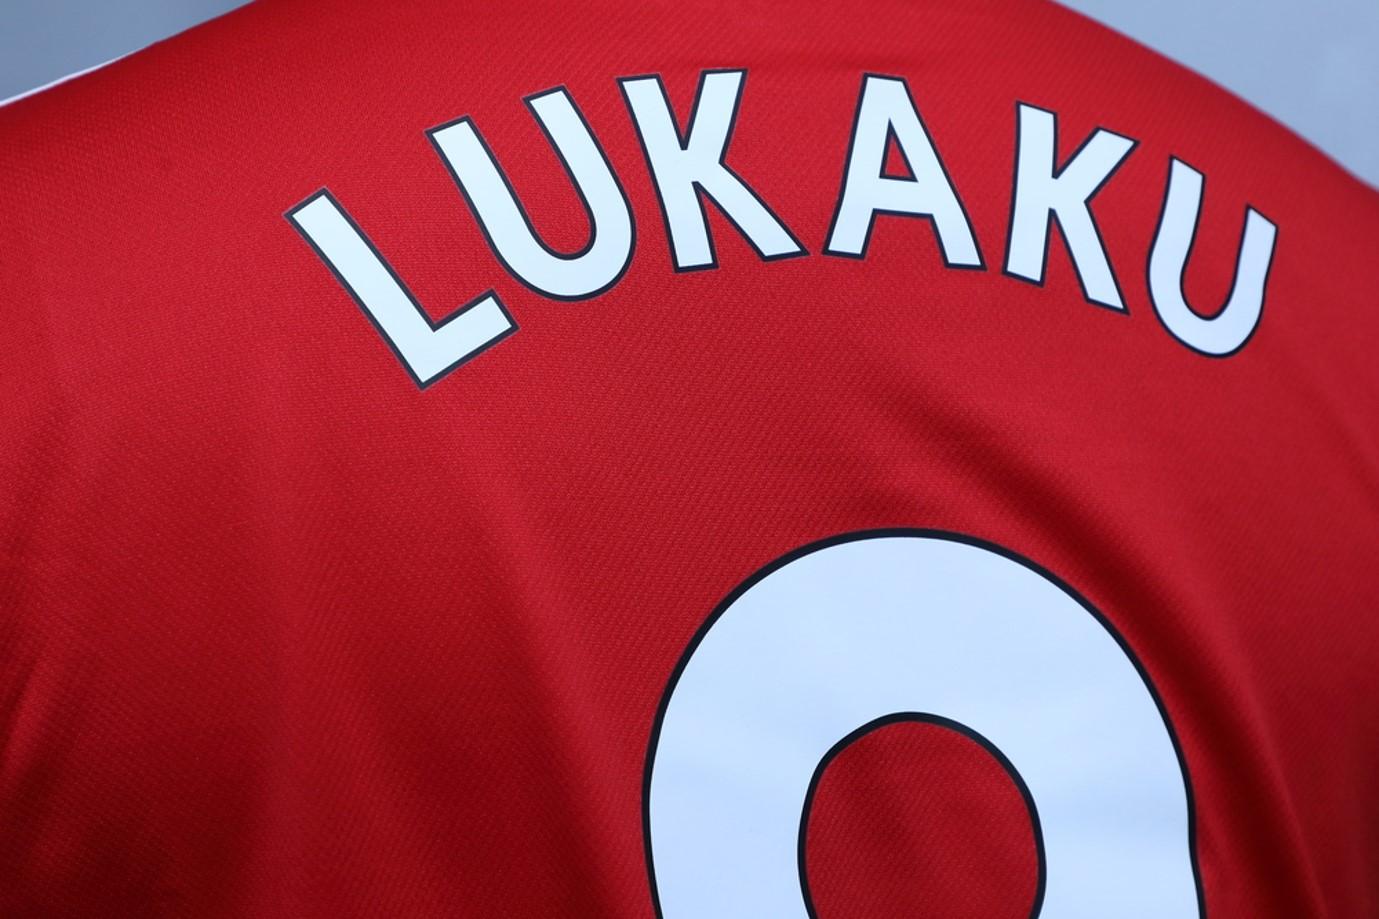 Betfair driller Lukaku med specials mod Arsenal